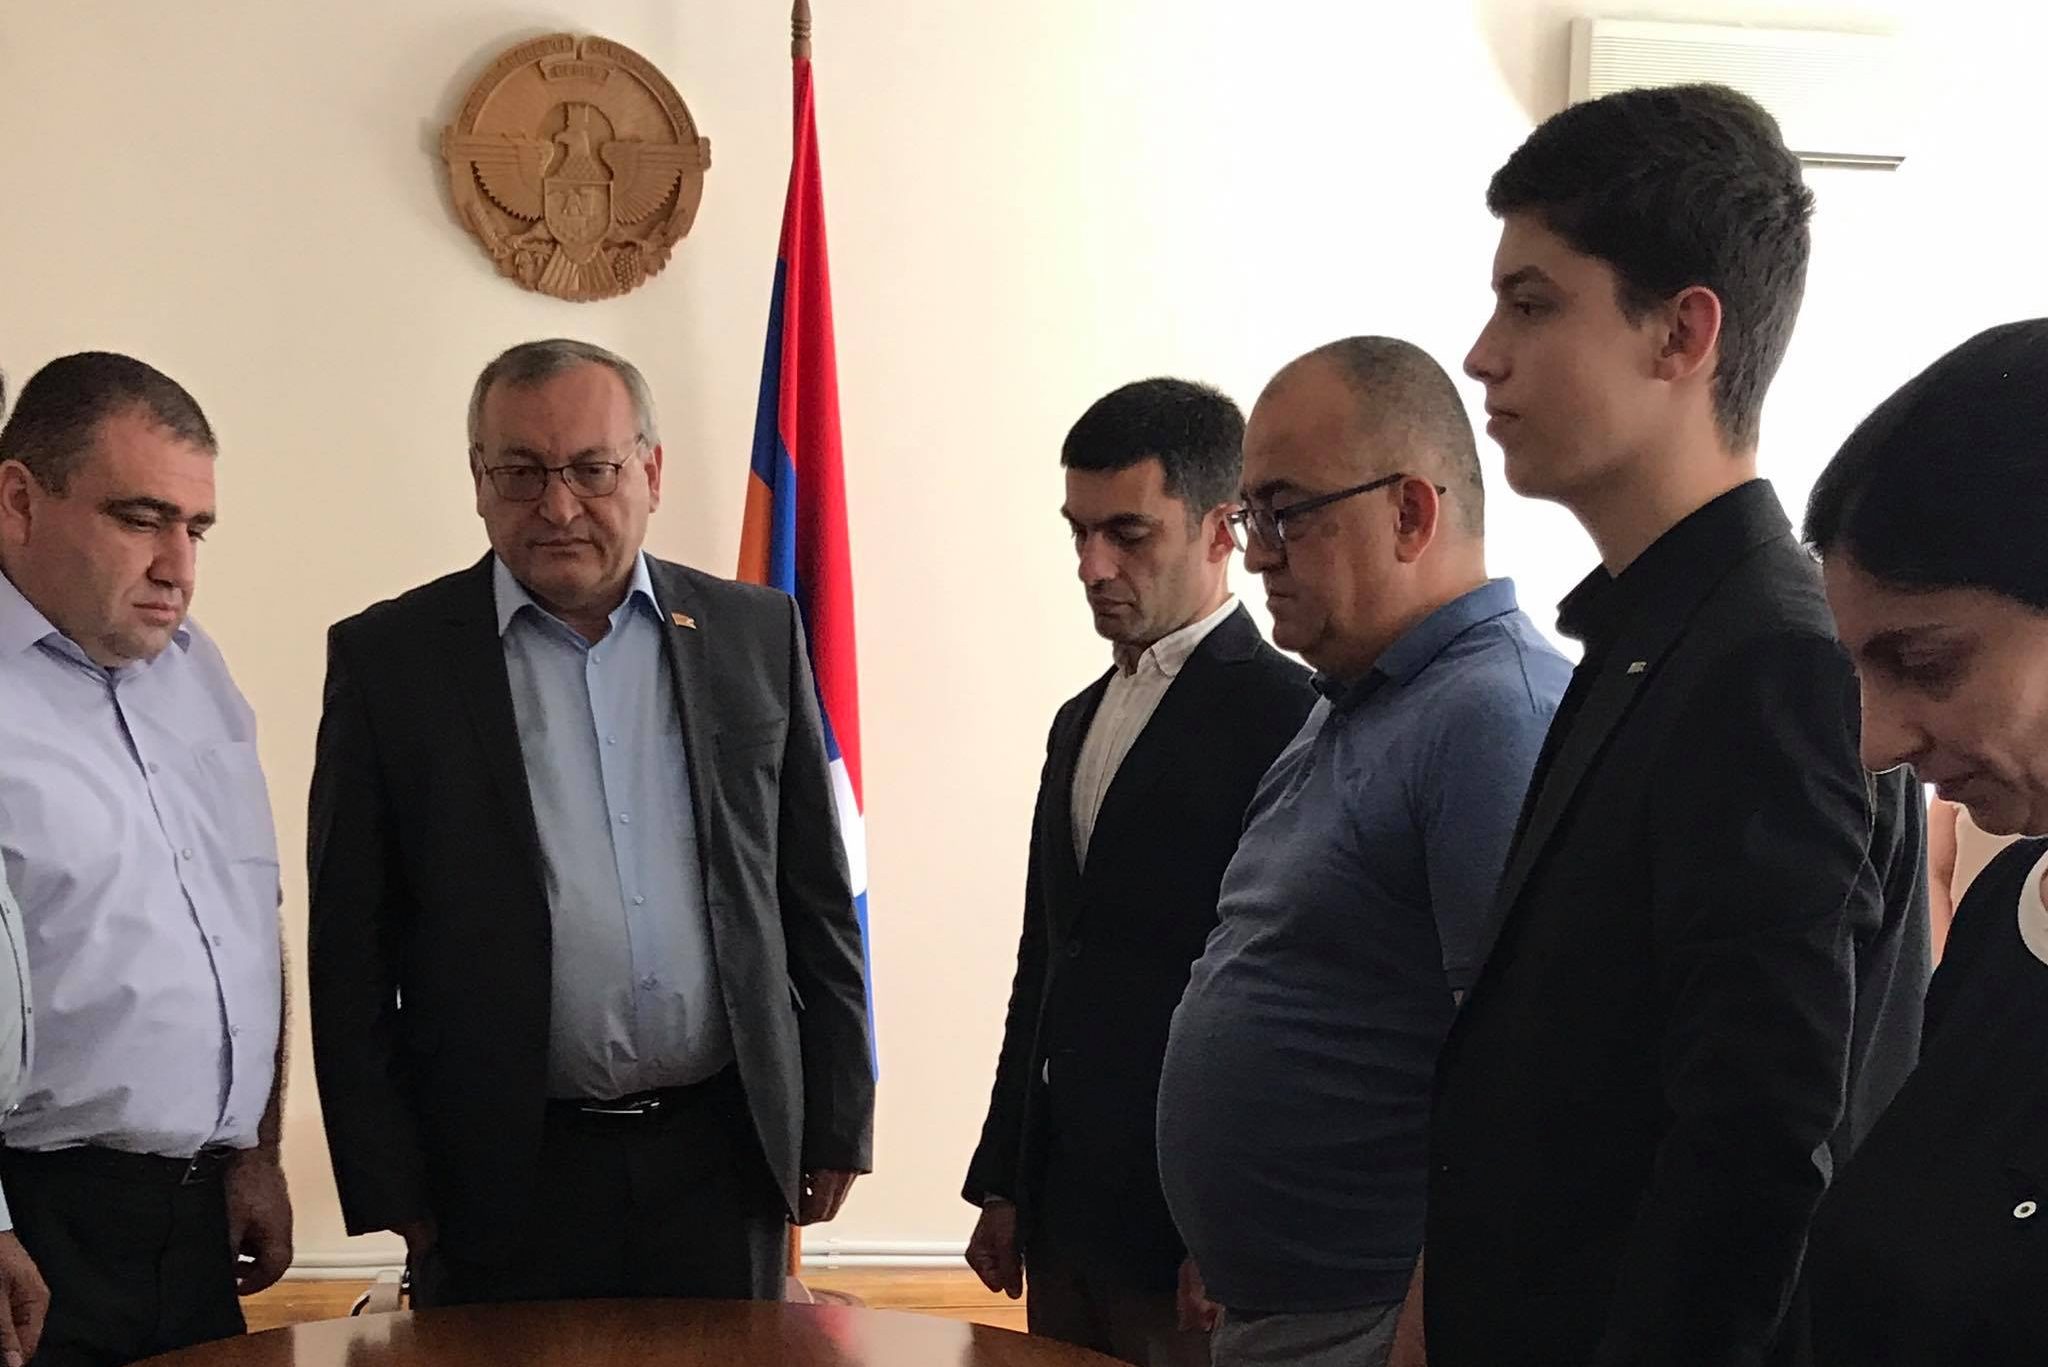 Արցախի ԱԺ նախագահ Արթուր Թովմասյանն աշխատանքային այցով Հայաստանում է